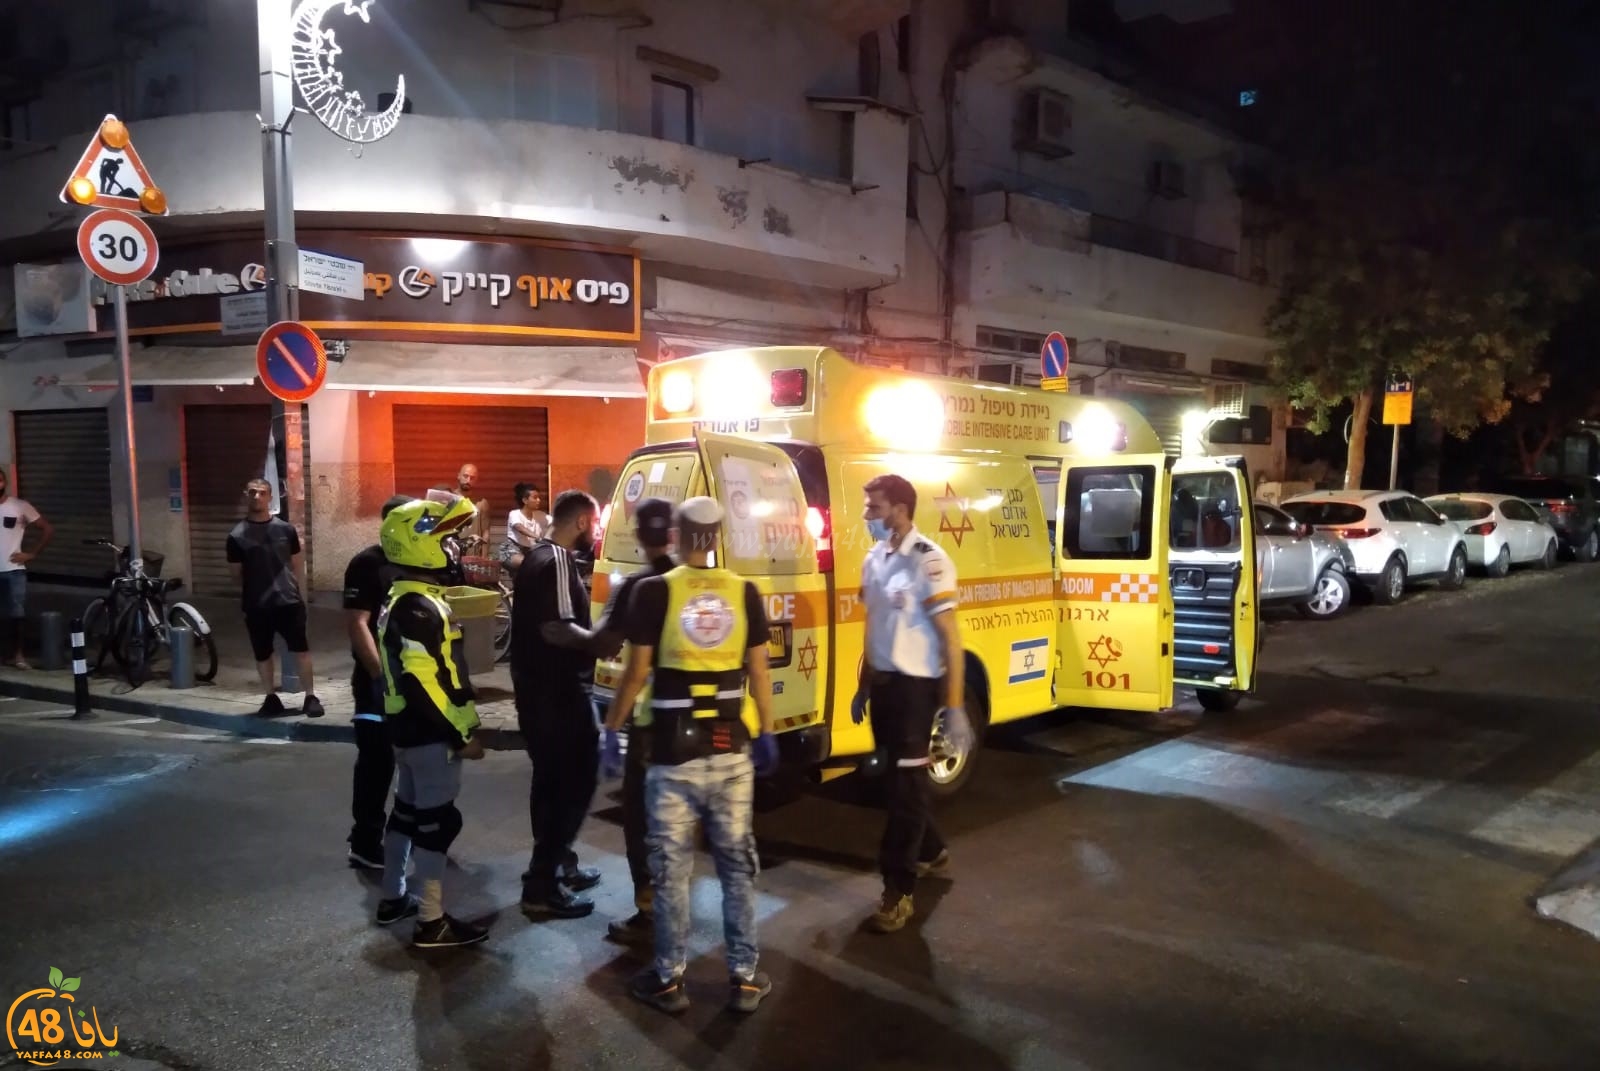  يافا: اصابة متوسطة لشاب باطلاق نار بعد منتصف الليلة